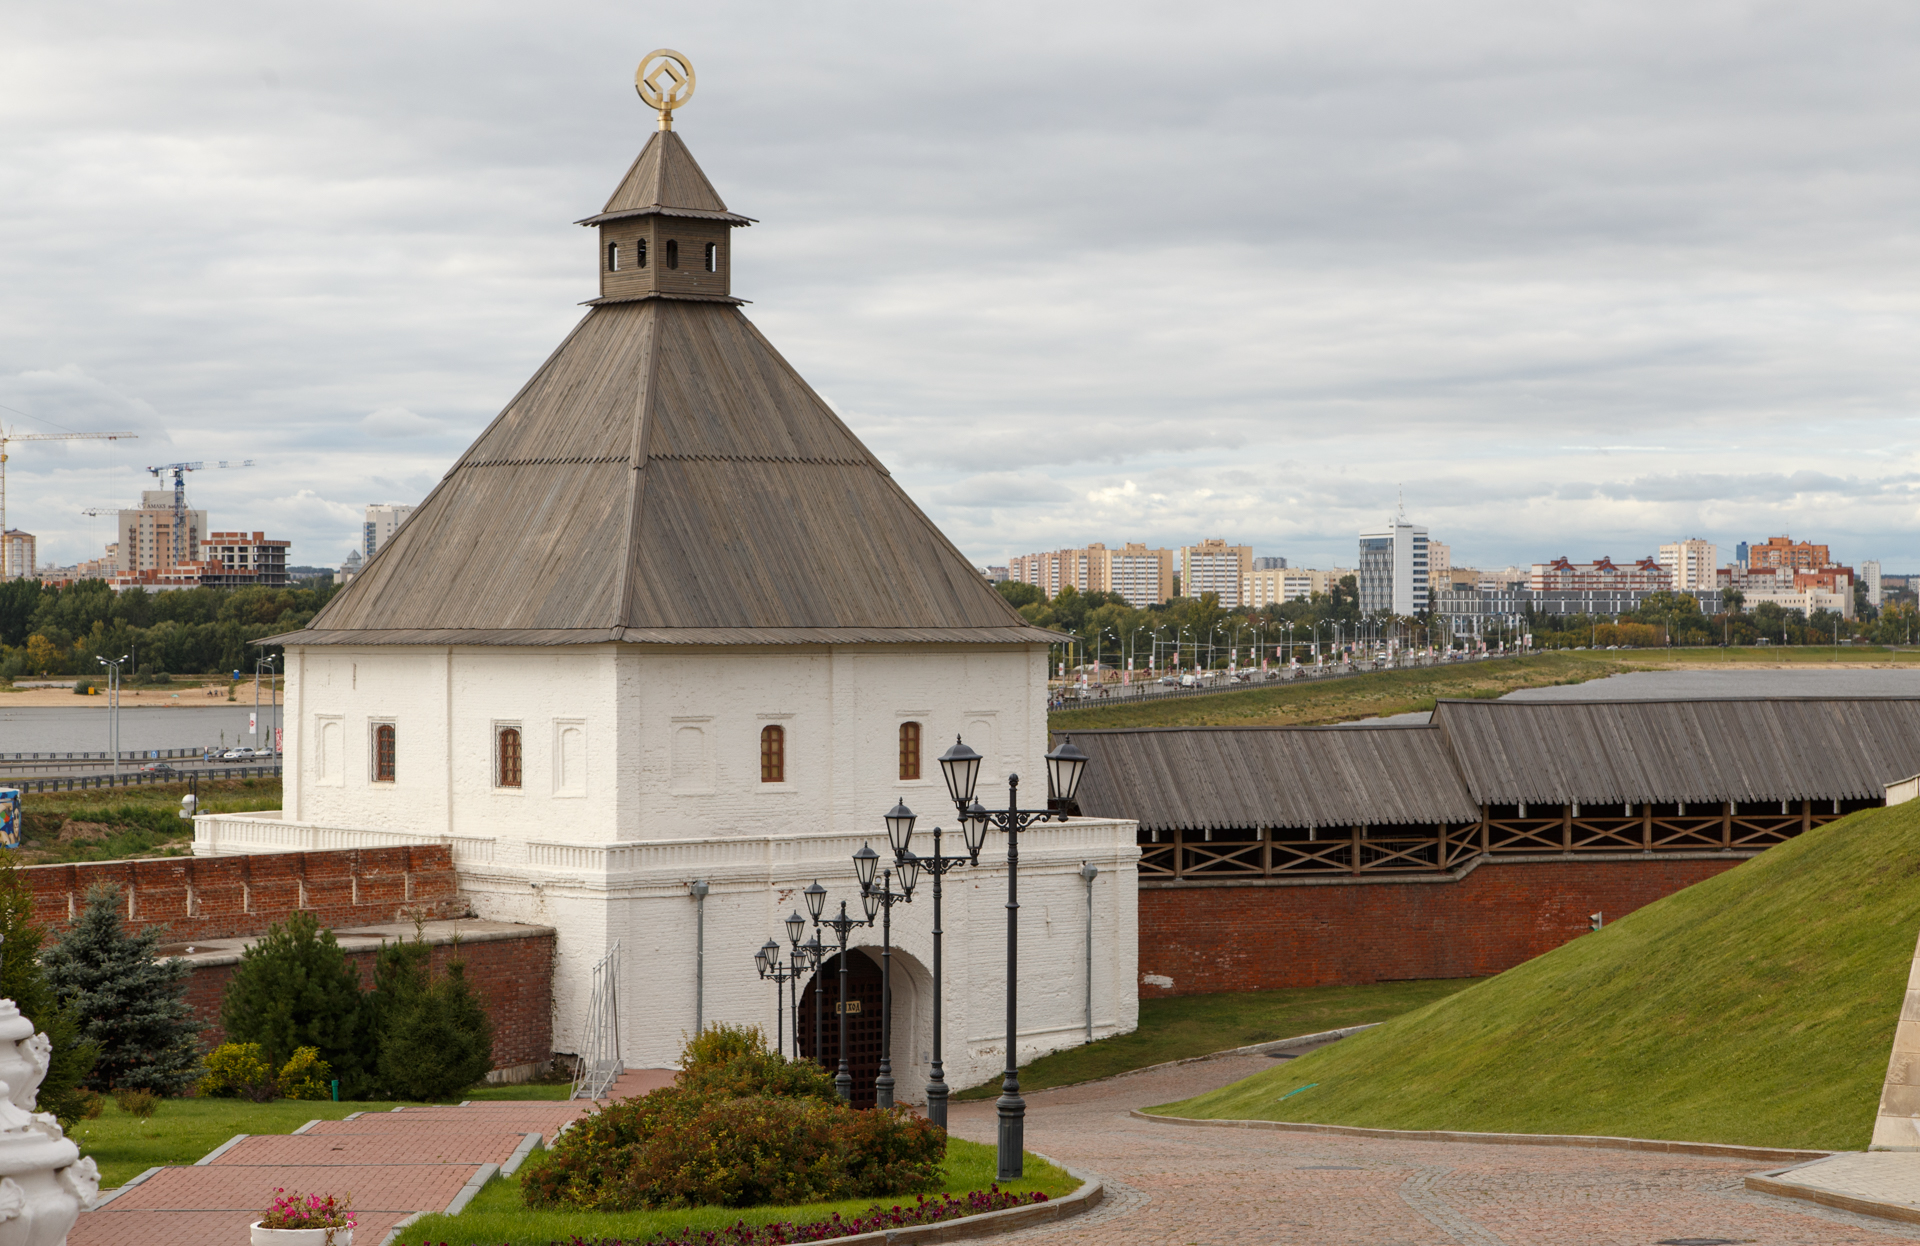 тайницкая башня казанского кремля